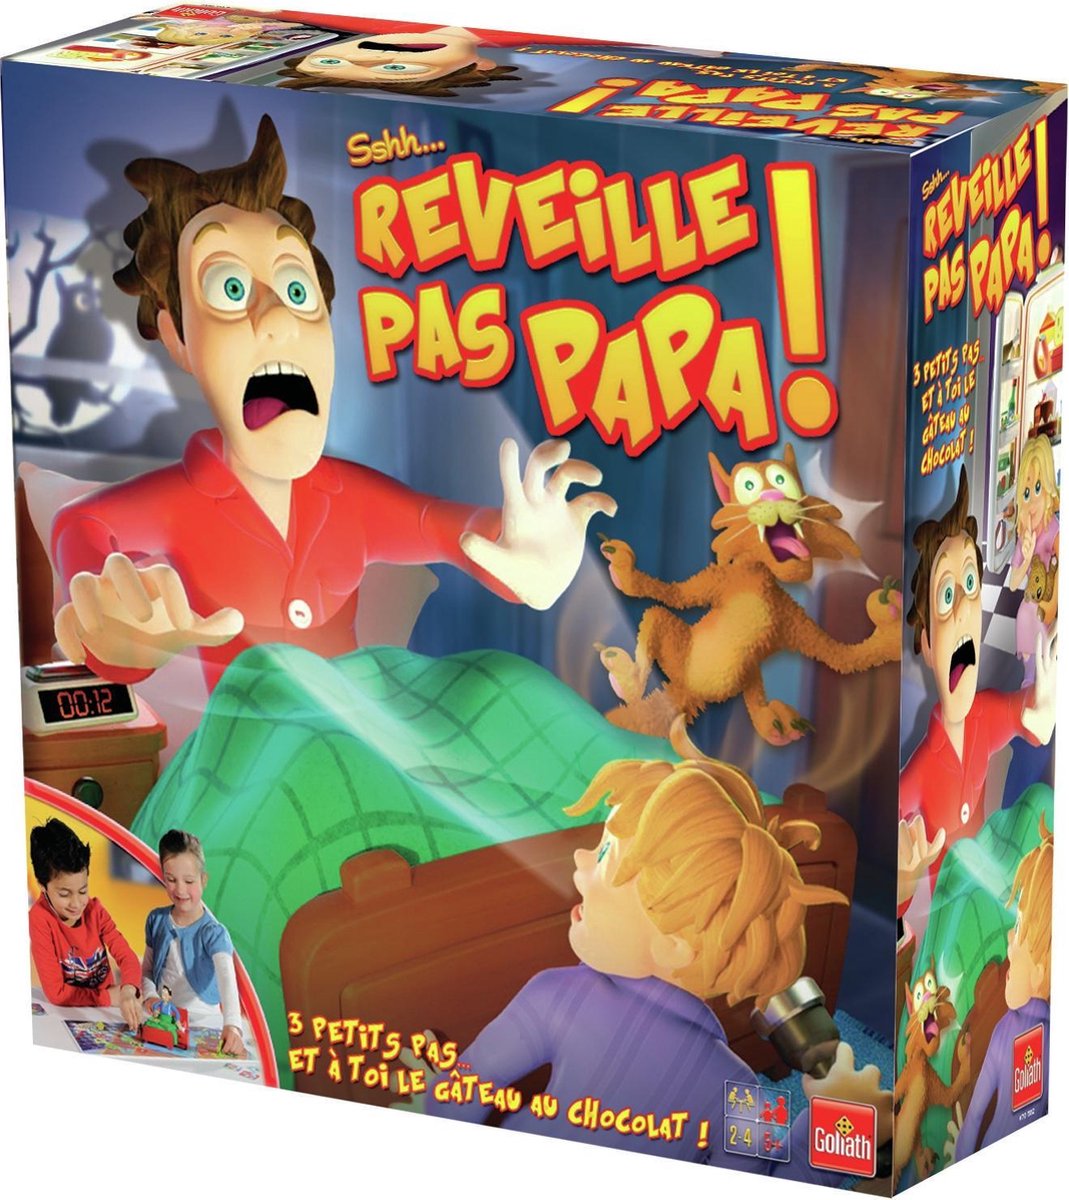 Reveille Pas Papa! - Frans Gezelschapsspel, Games